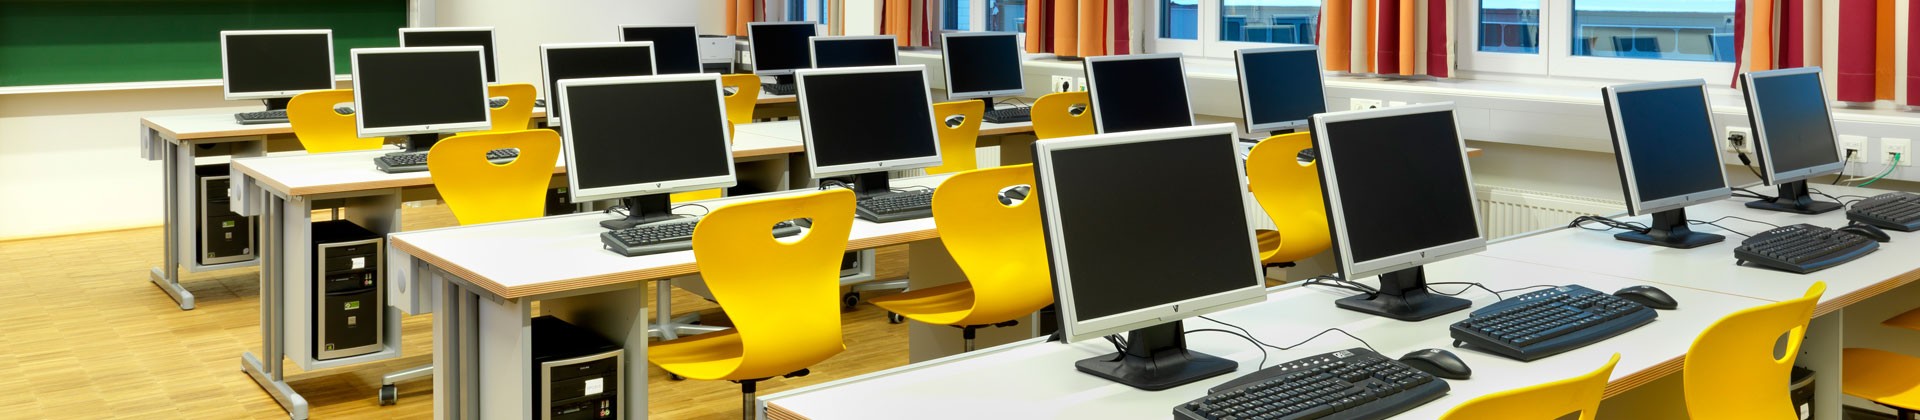 IT-Student’s desks